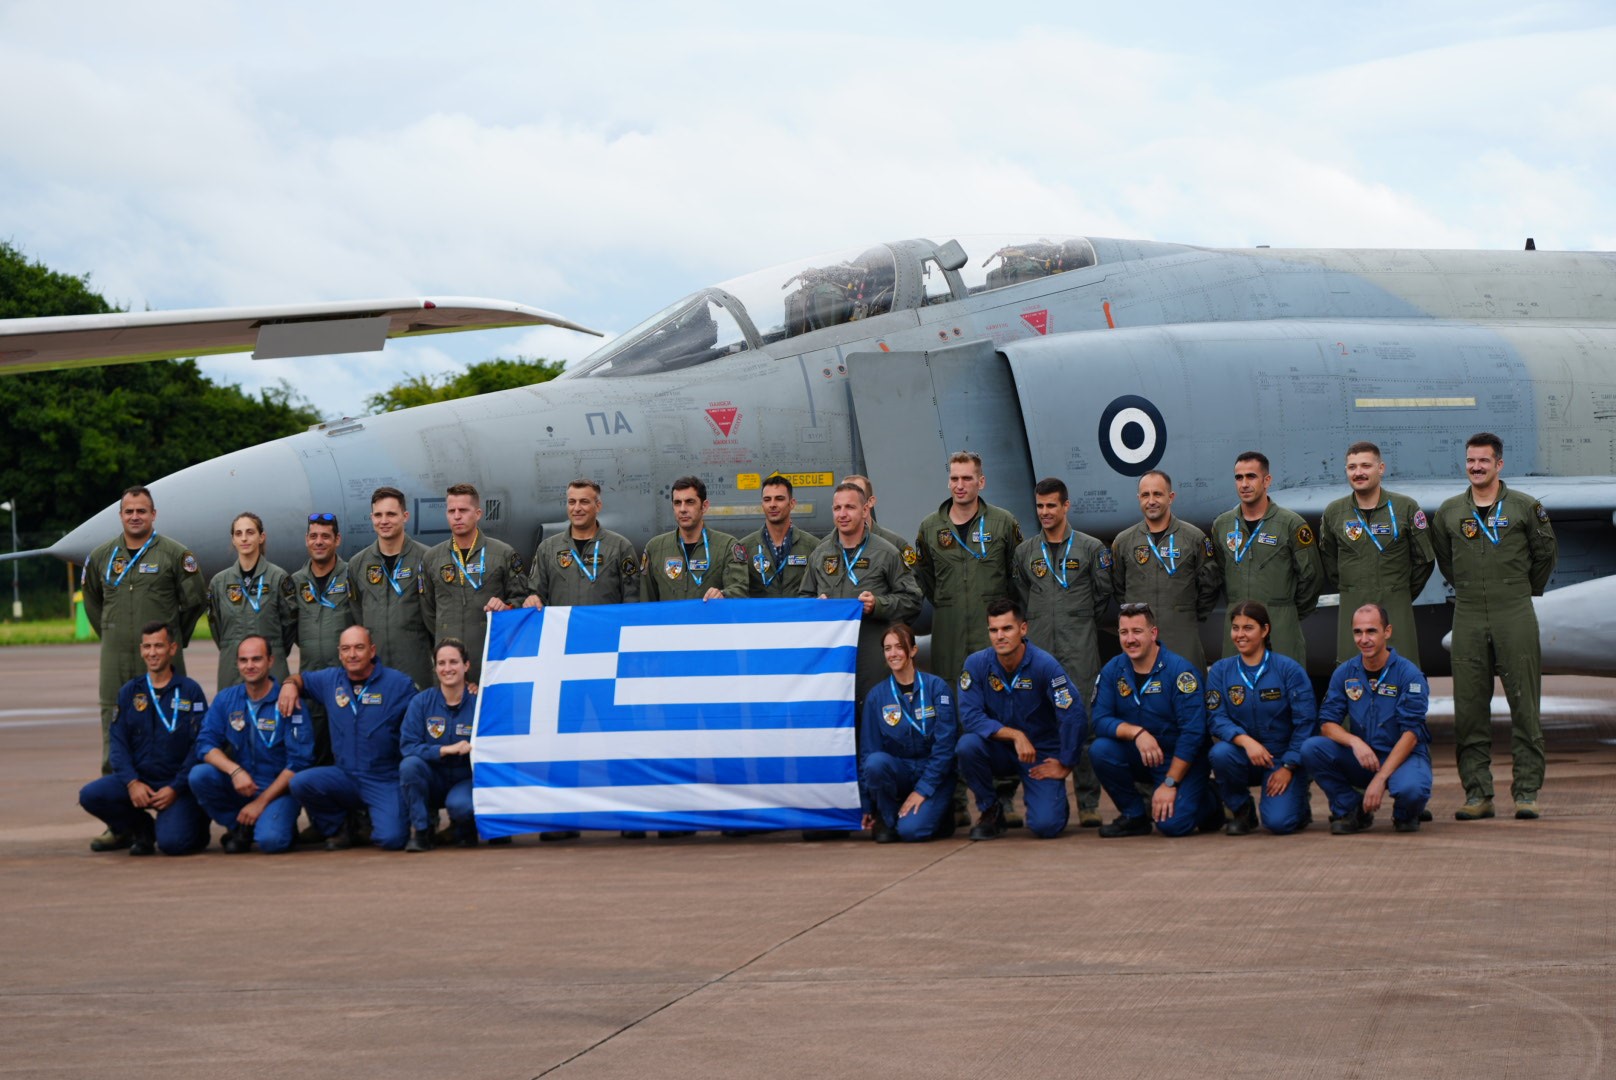 Τα ελληνικά Phantom και τα F-16 μάγεψαν της Πολεμικής Αεροπορίας μάγεψαν 200.000 θεατές  στη Βρετανία